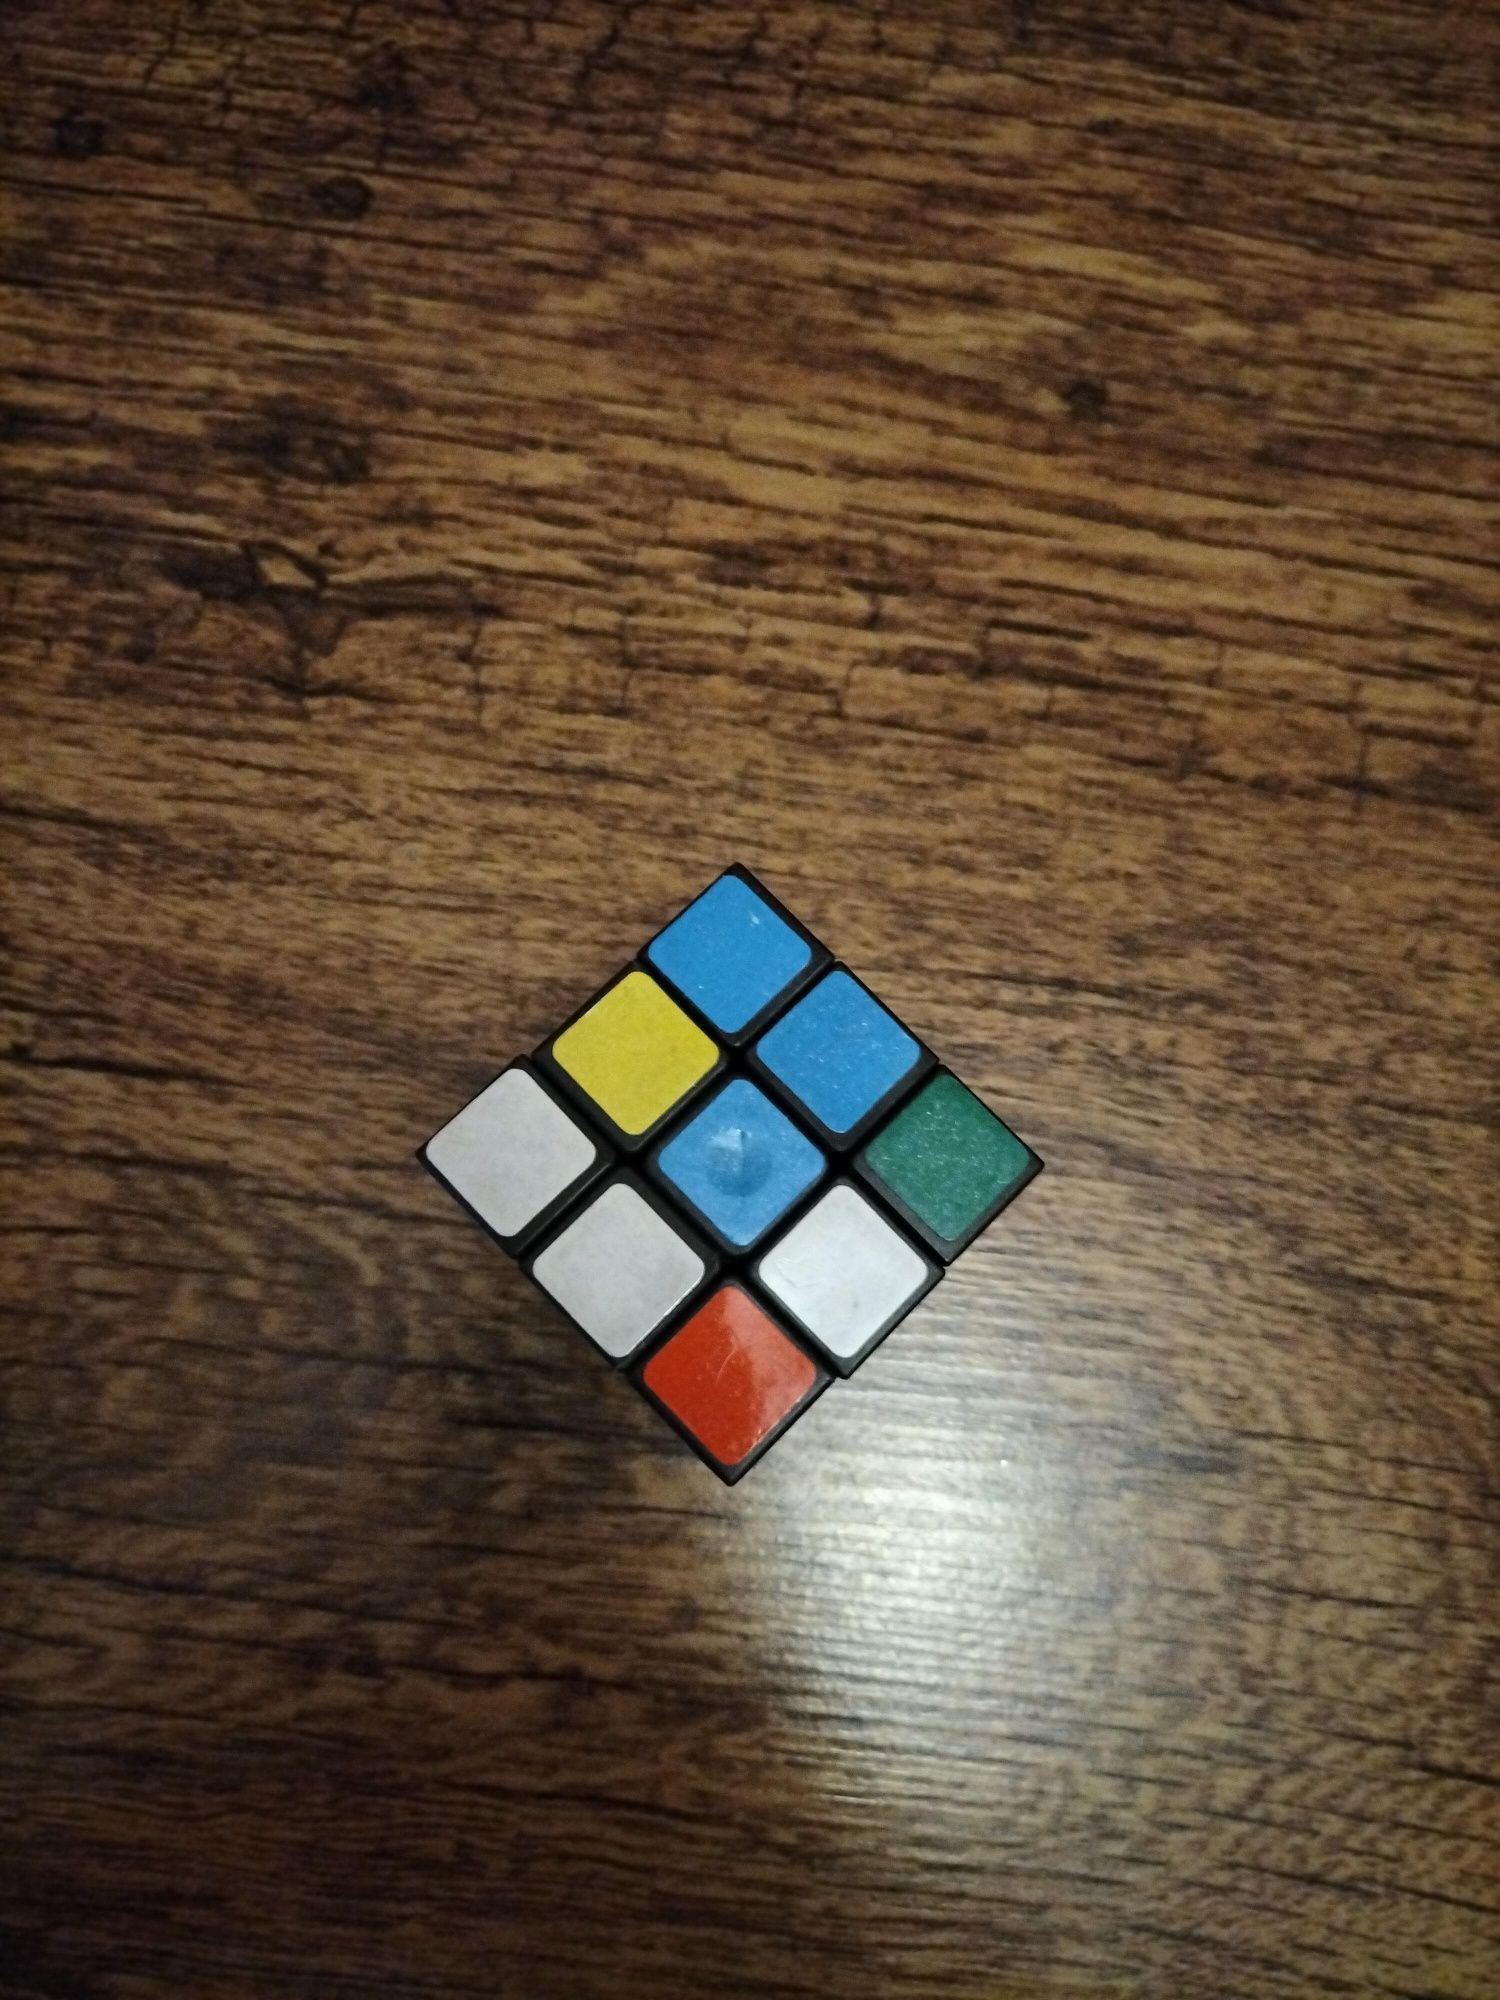 Kostka Rubika sprzedam